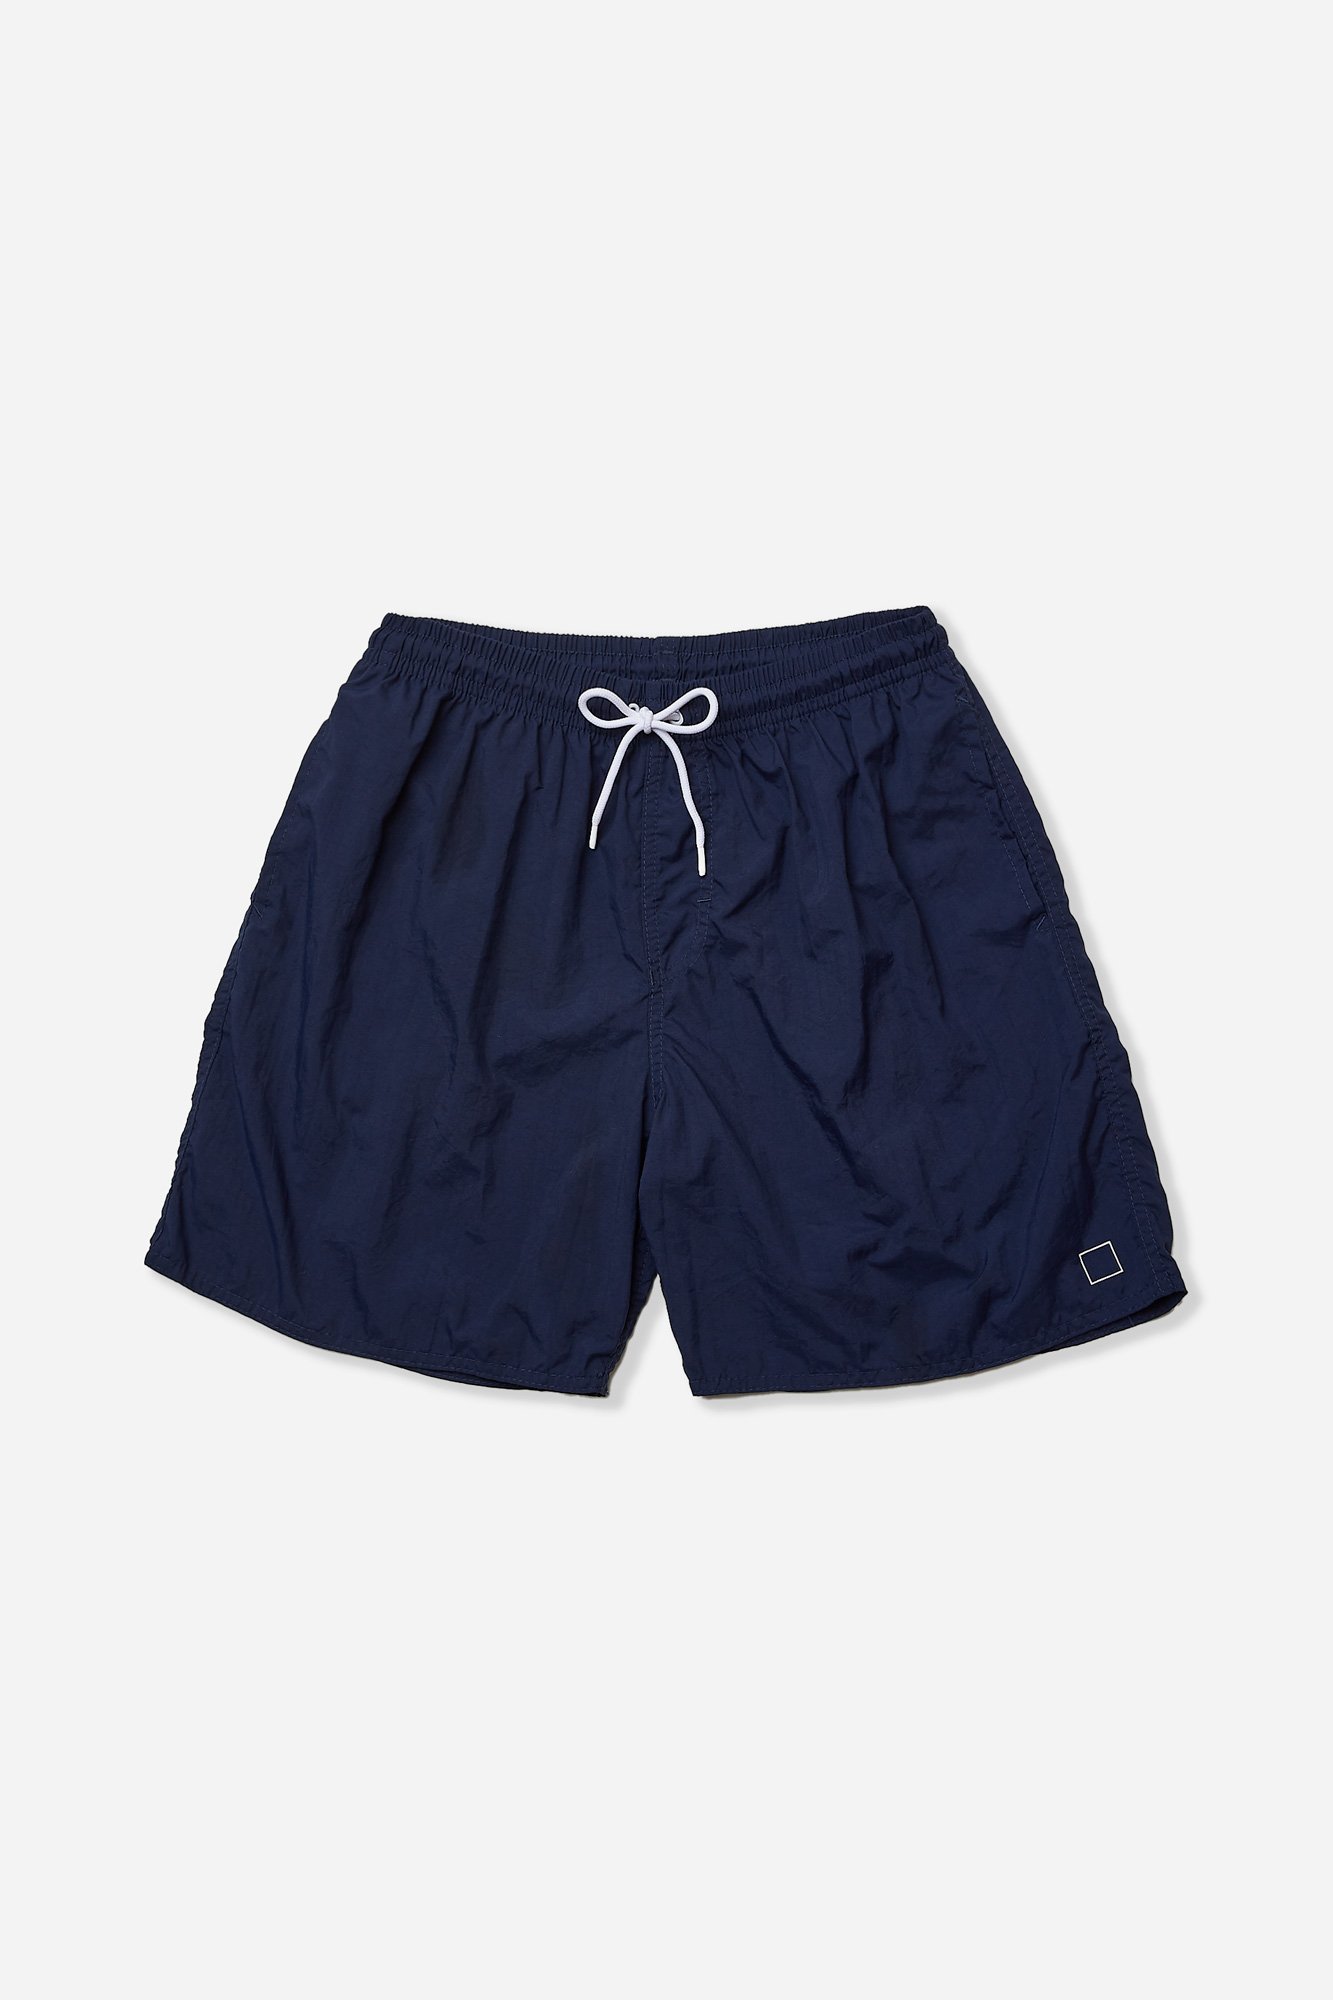 02 shorts poliamida azul marinho